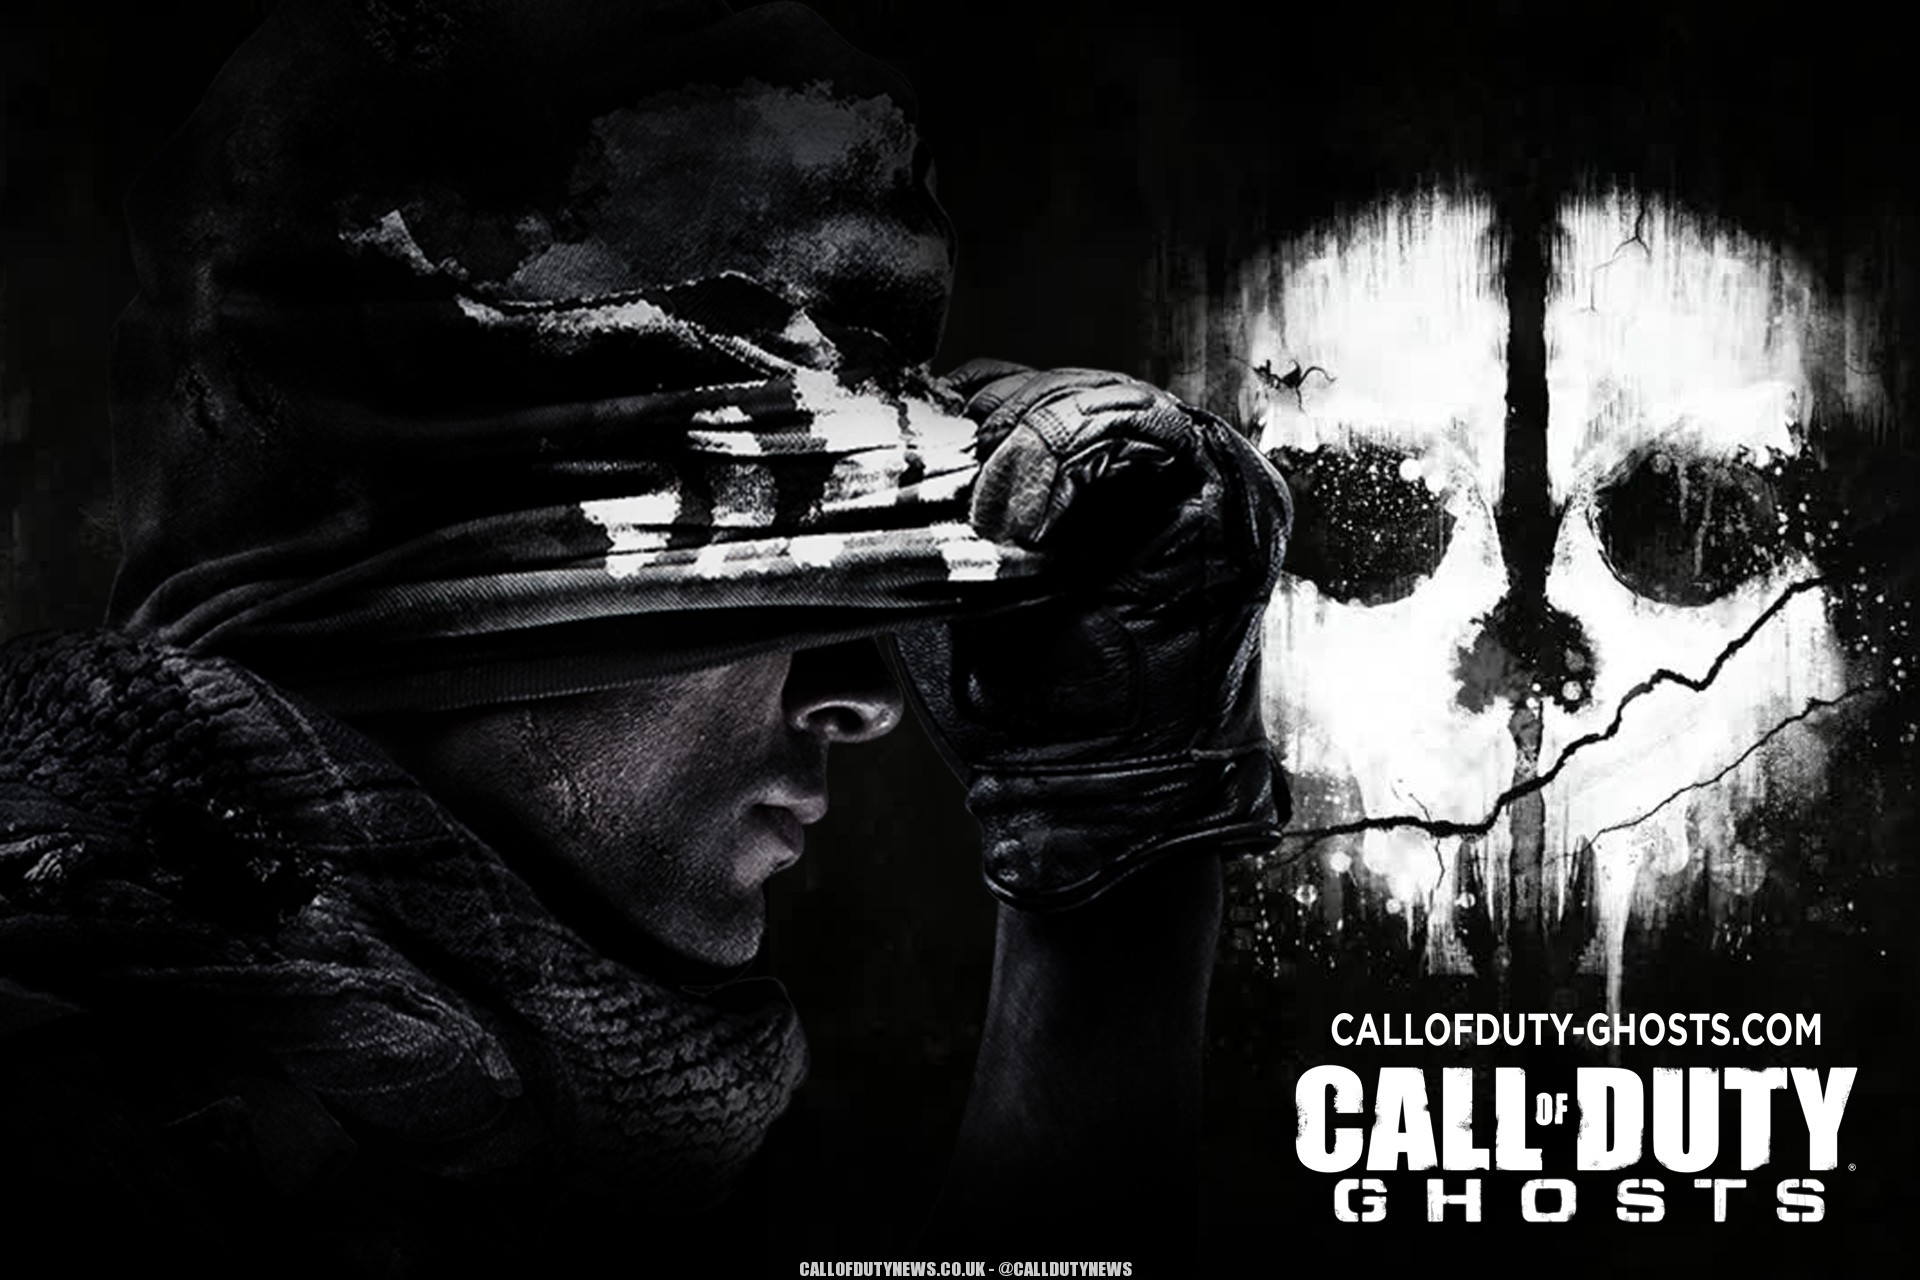 ТОП-5 самых продаваемых игр серии Call of Duty